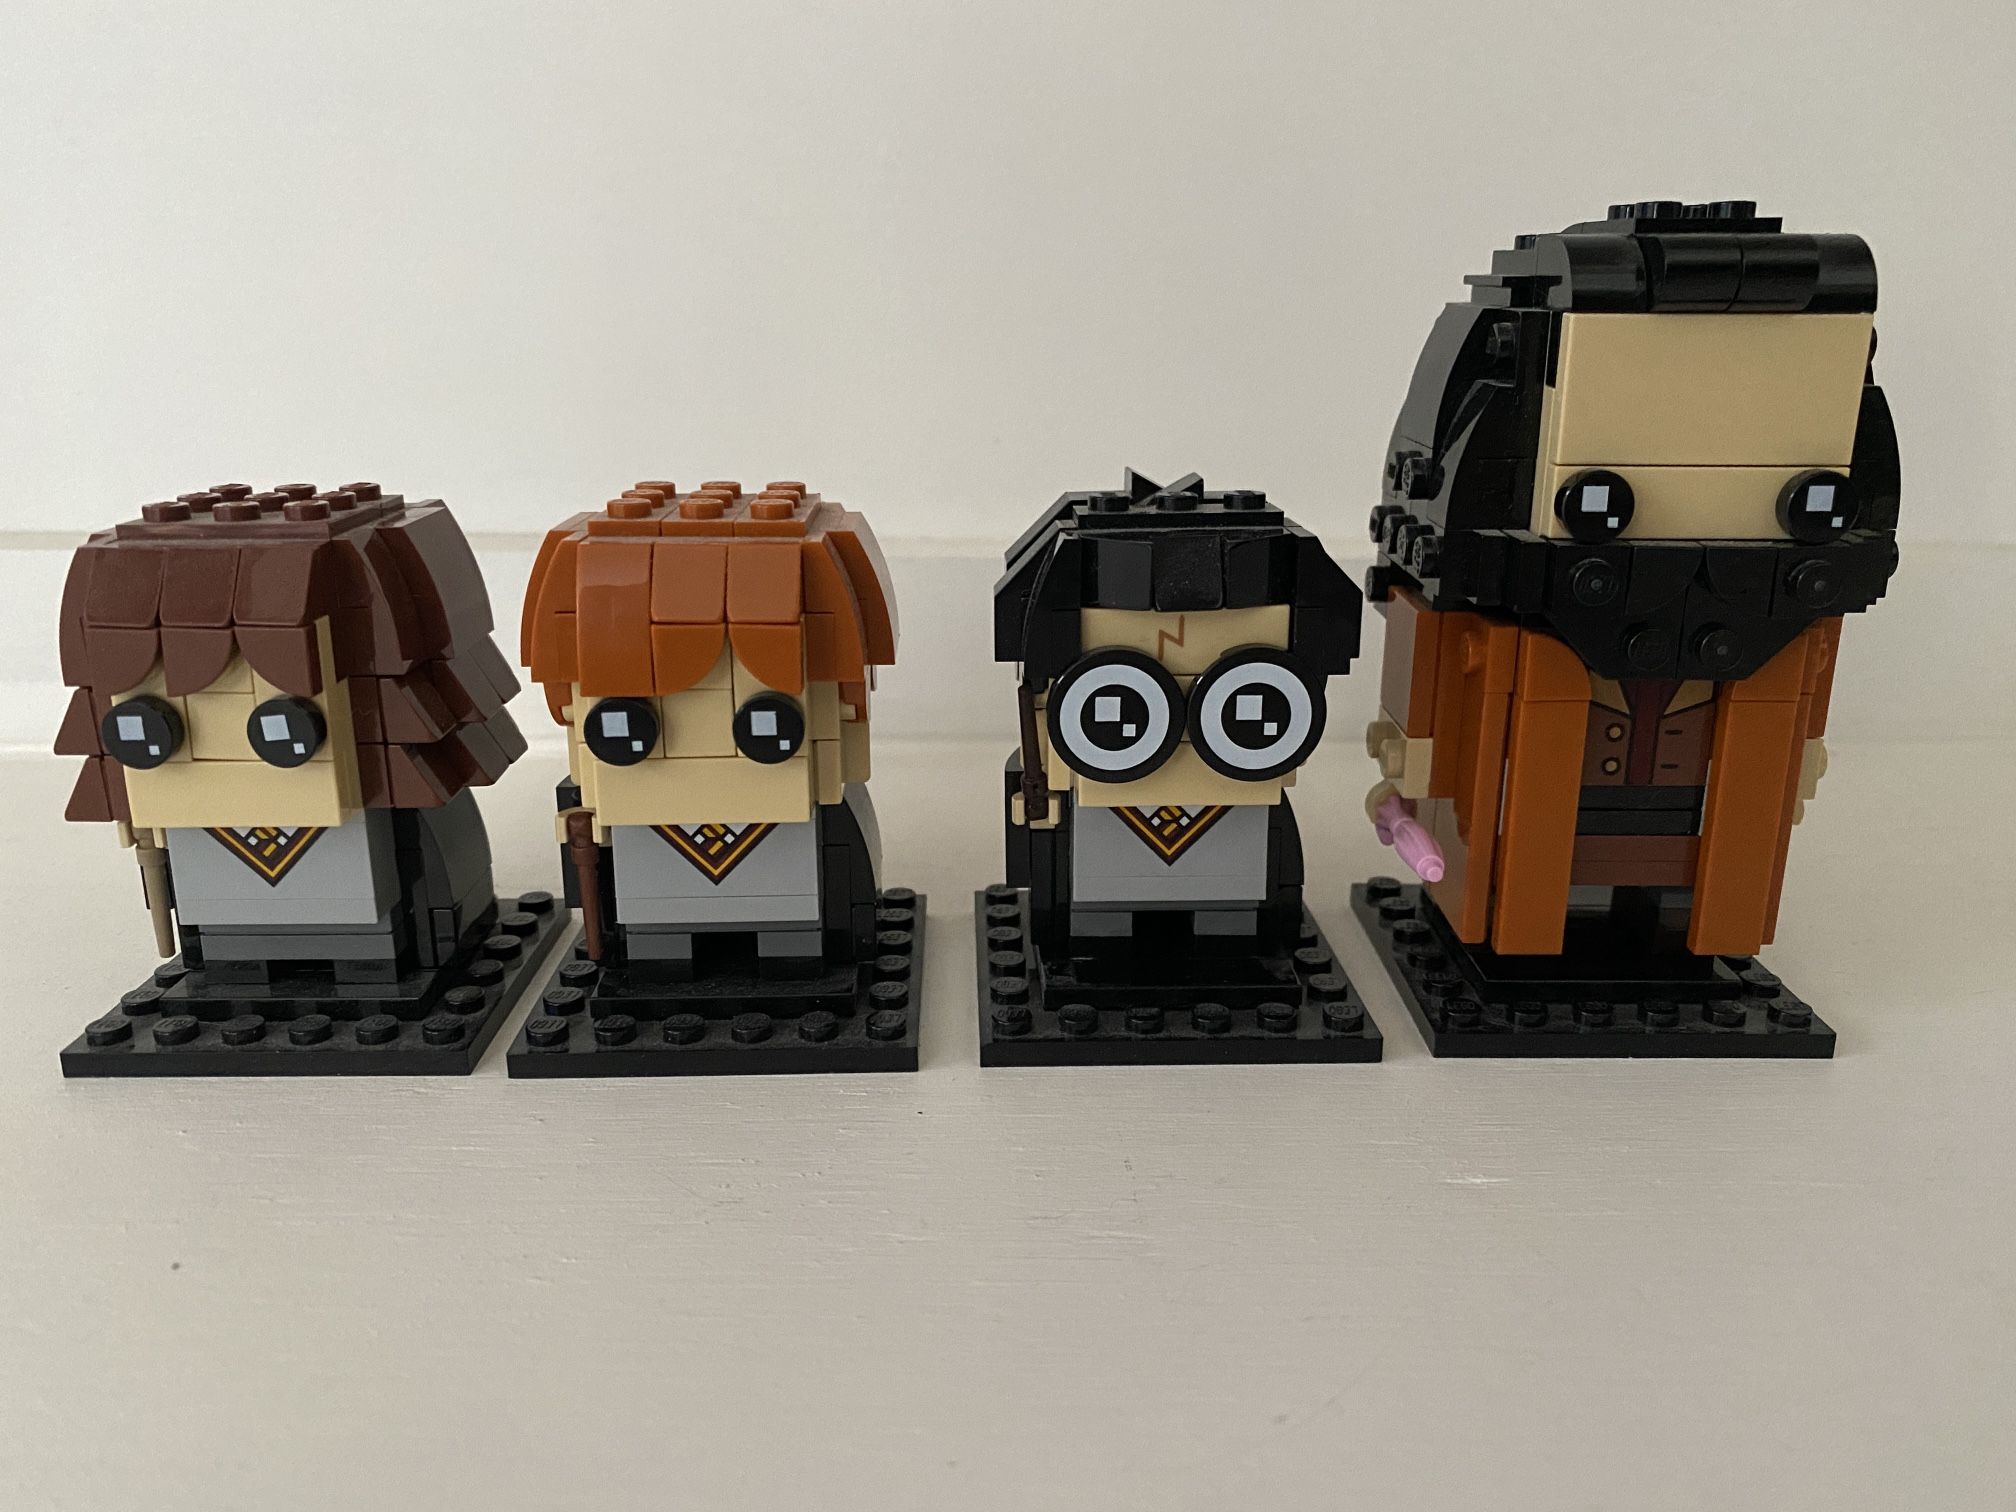 LEGO BrickHeadz Harry Potter